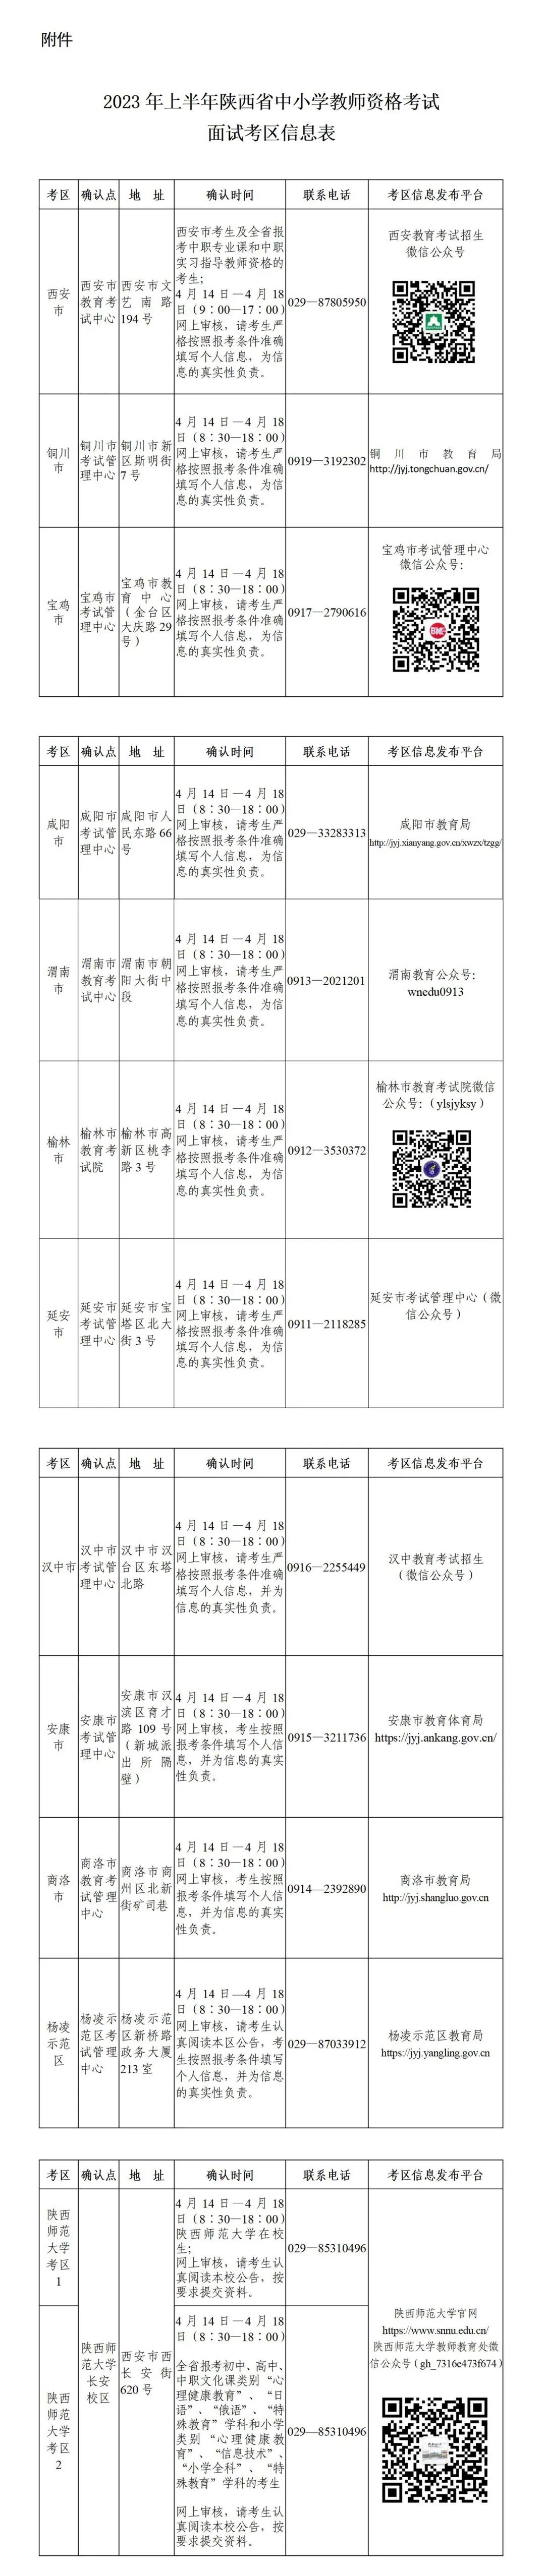 2023年上半年陕西省中小学教师资格考试面试公告